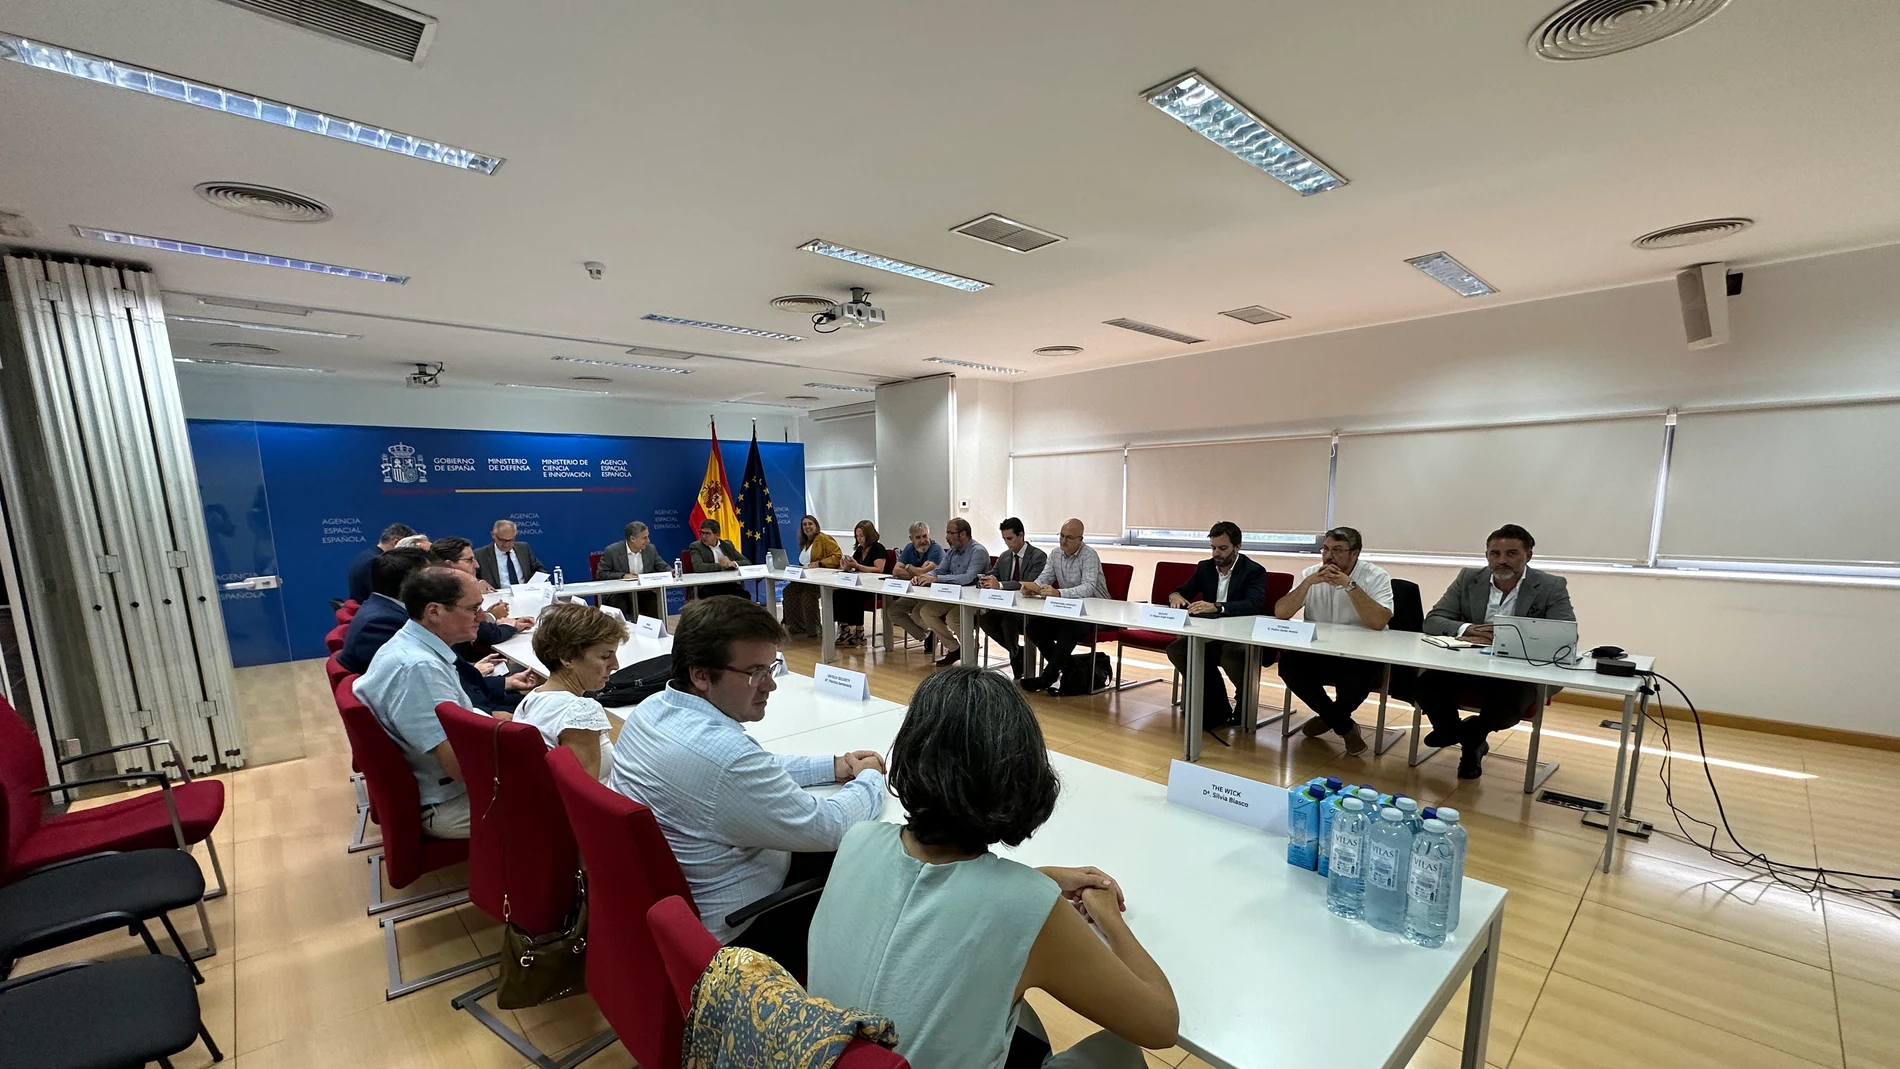  Belló durante una sesión de los “Encuentros con líderes tecnológicos” organizada por CTA en el Edificio CREA del Ayuntamiento de Sevilla